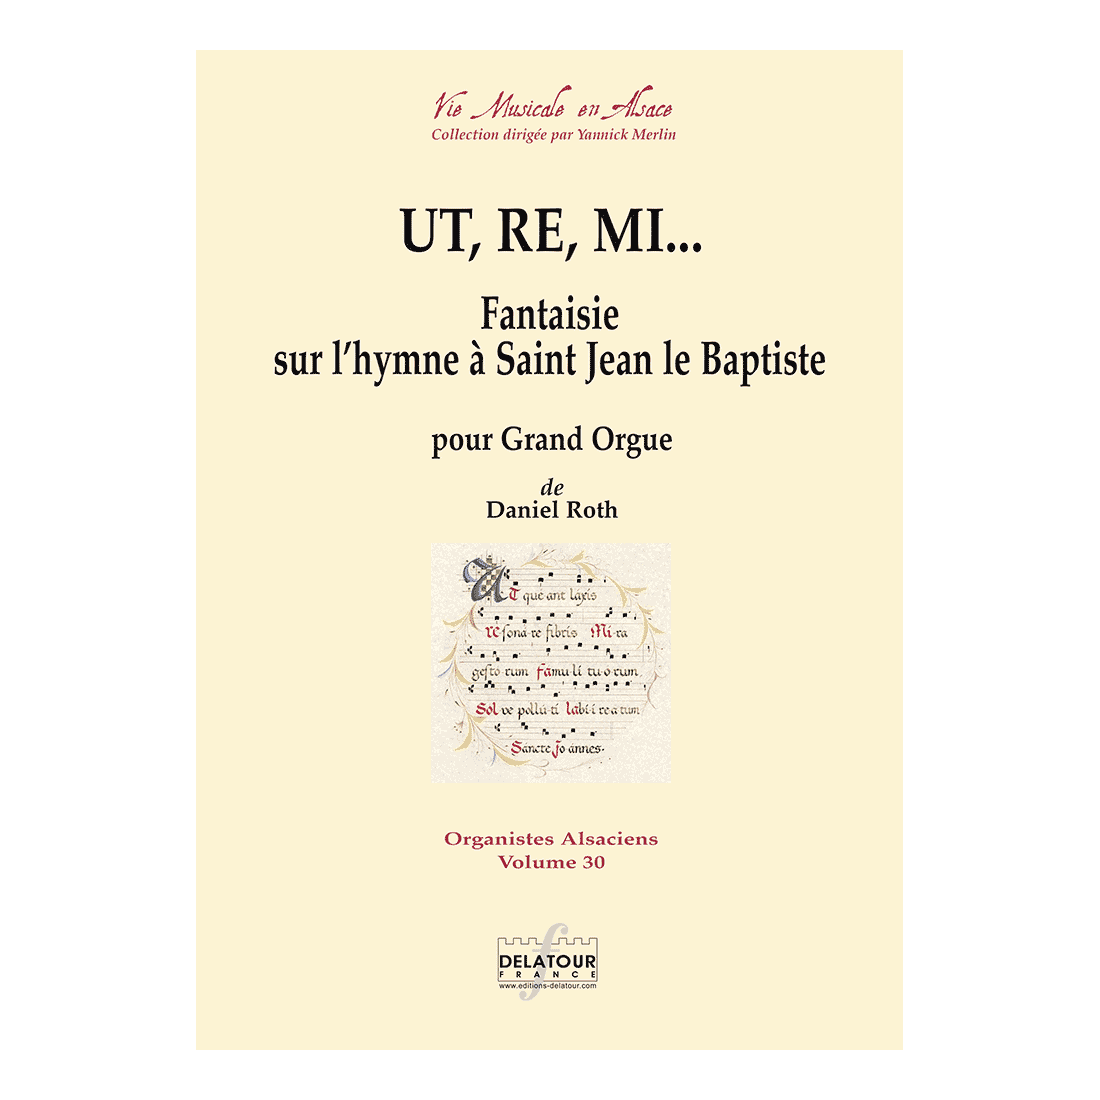 Ut, re, mi - Fantaisie sur l'hymne à Saint Jean le Baptiste für Ogel